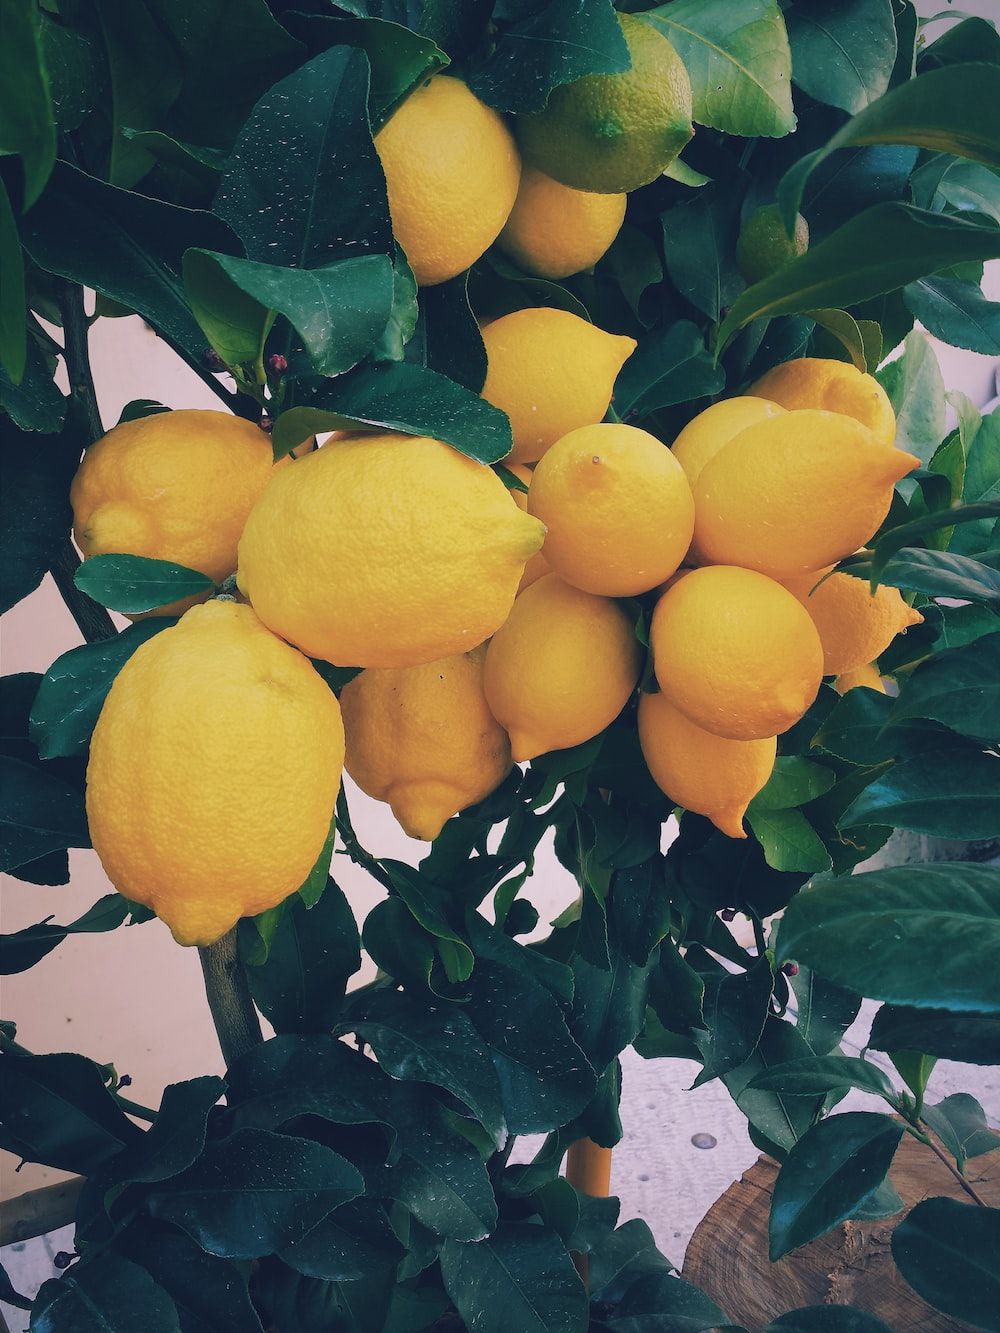 A tree with many lemons on it - Lemon